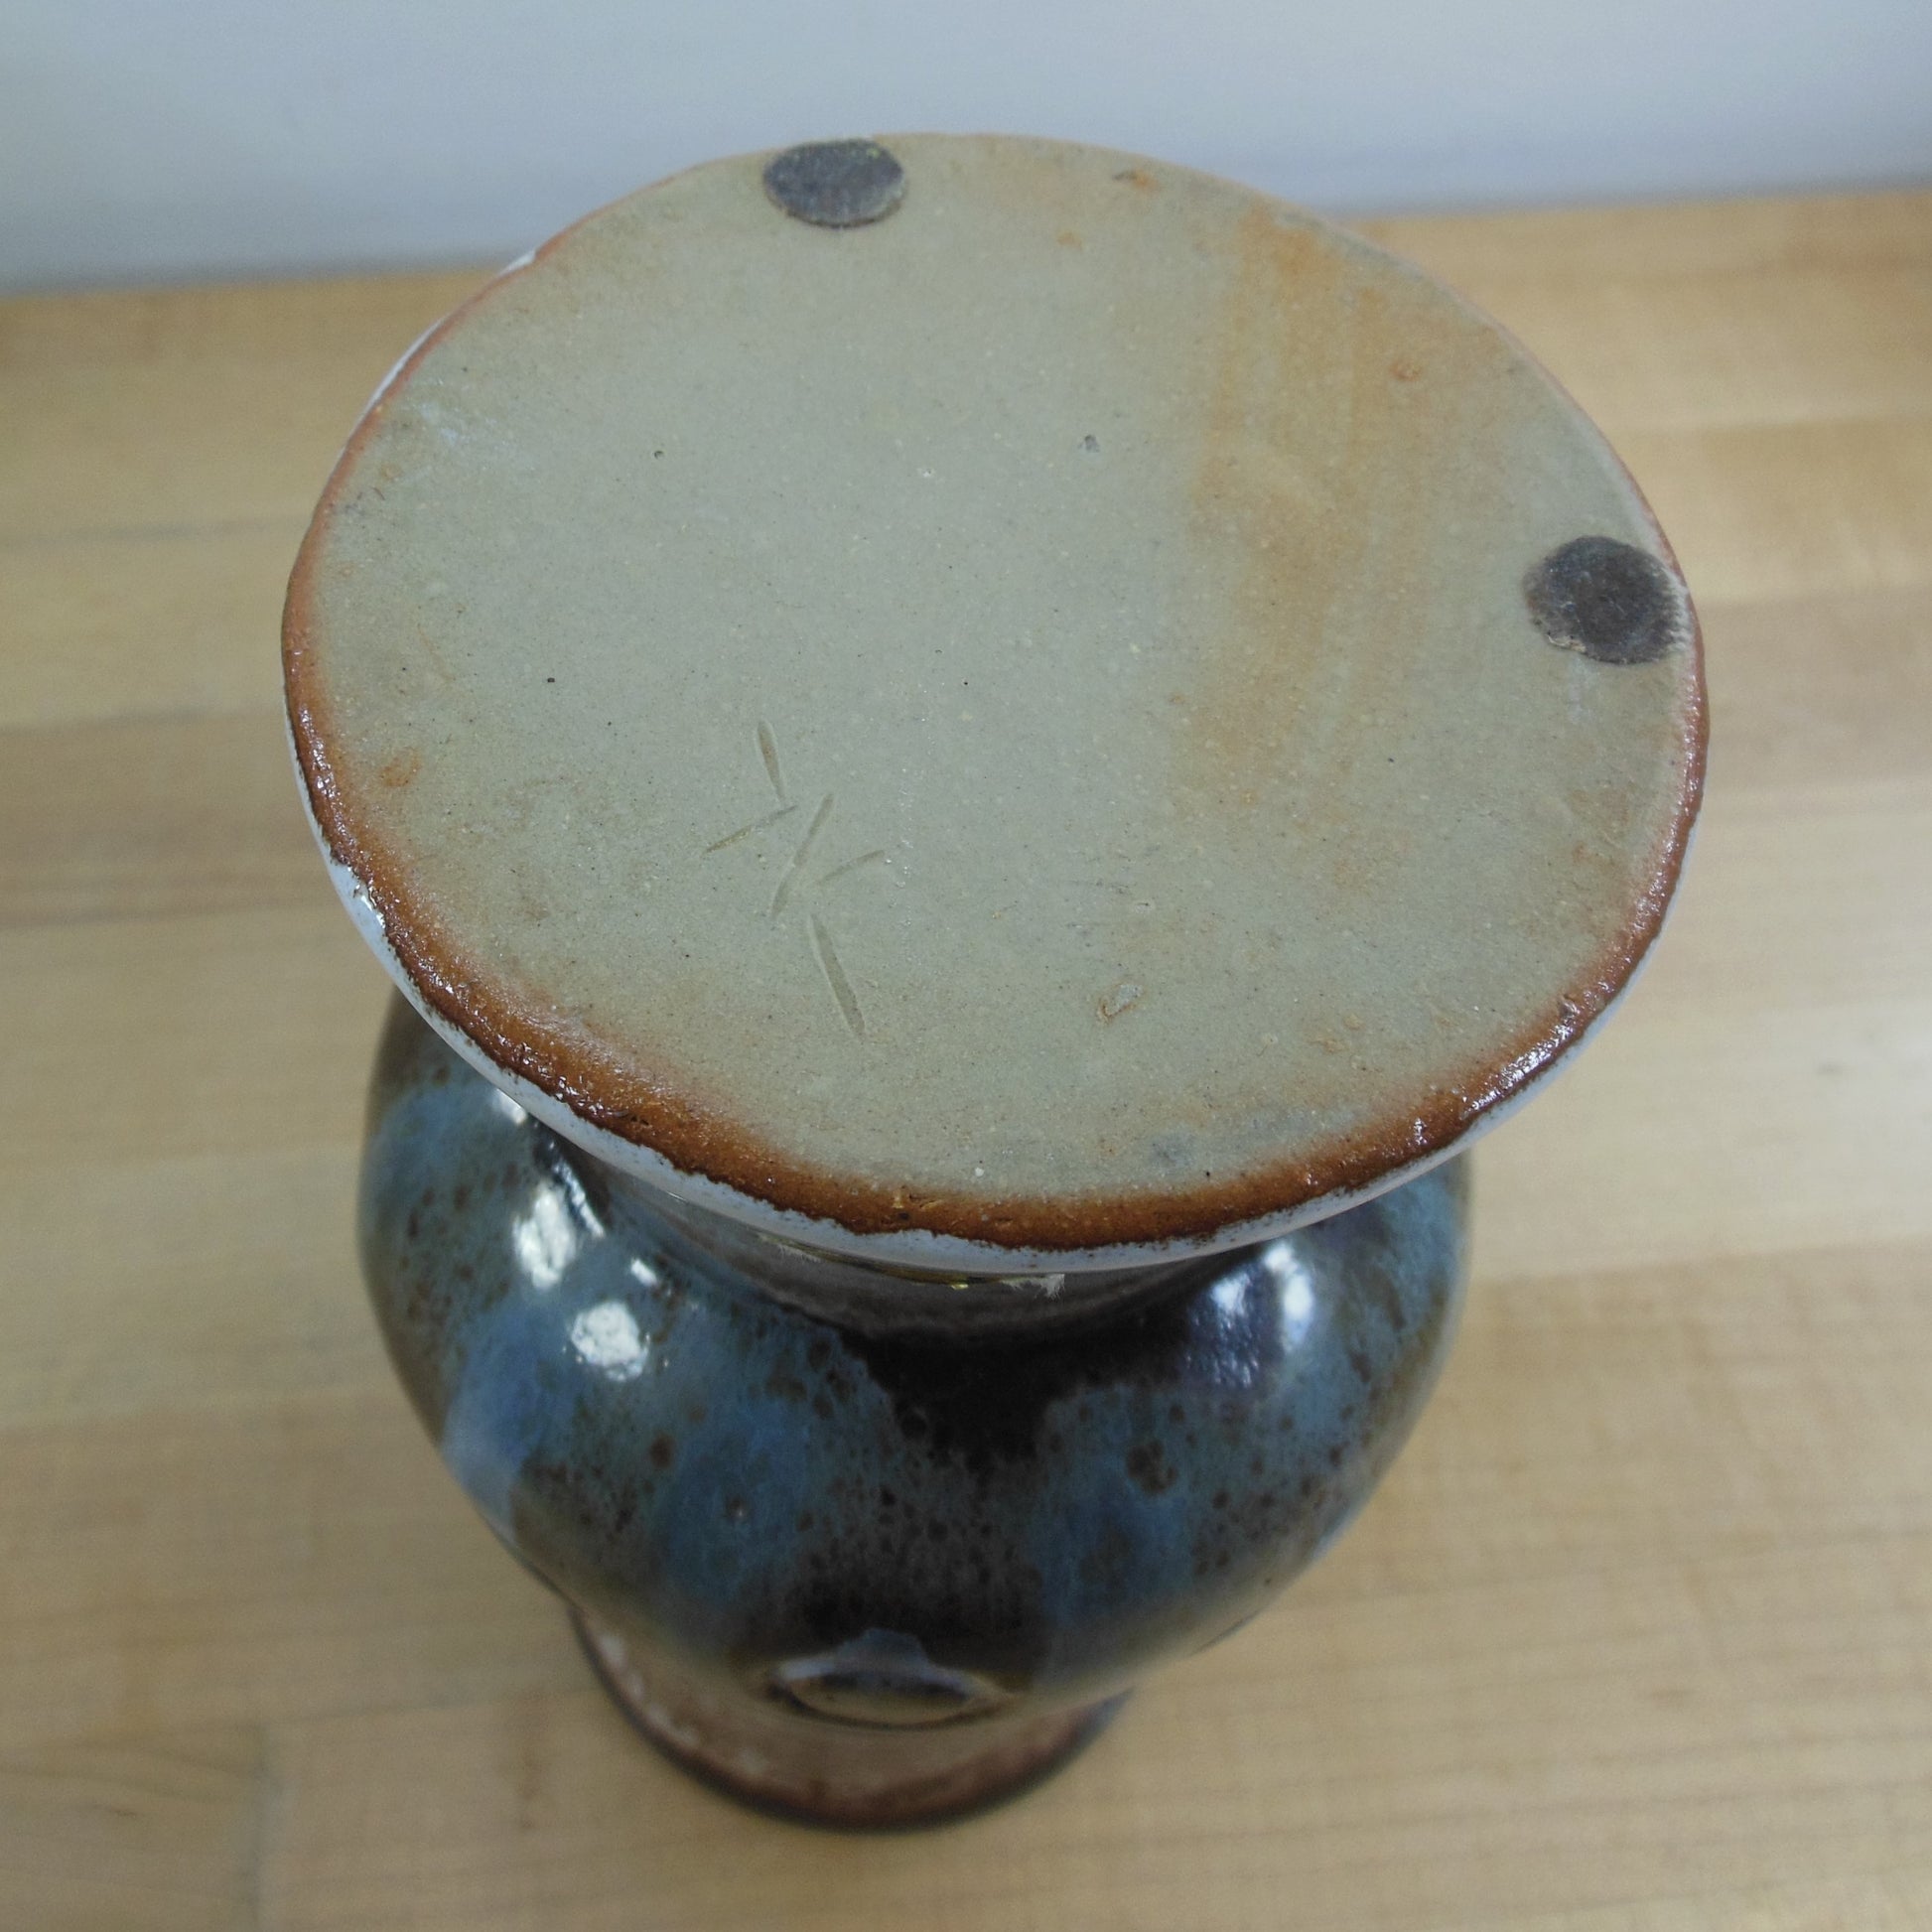 Kingo Keramik Demark Stentoj Pottery Vase Blue Brown Vintage 1970's